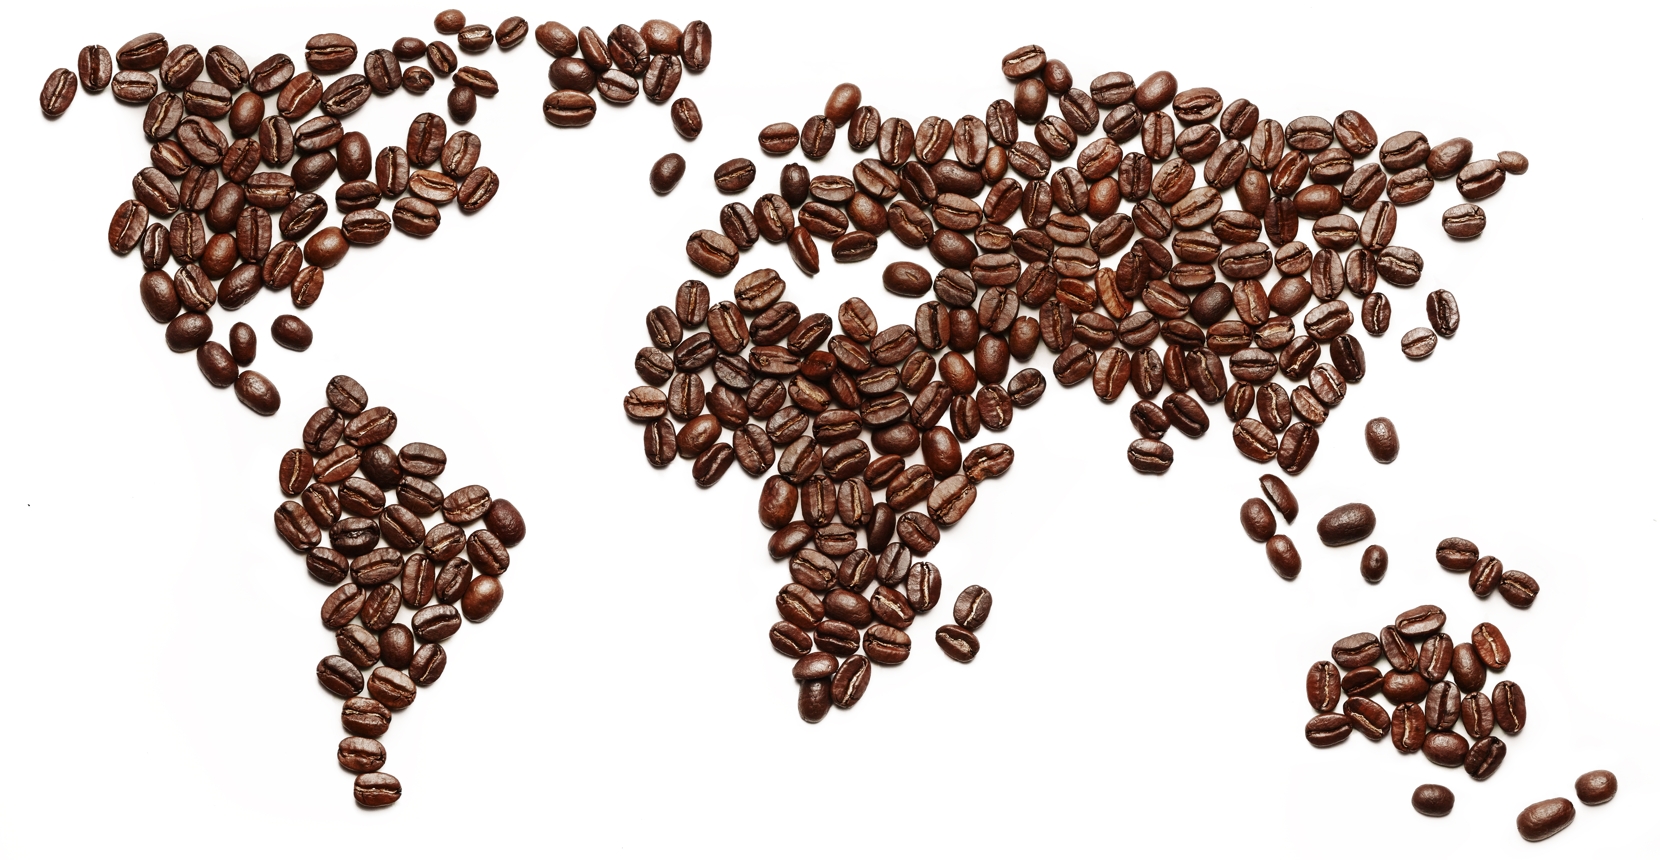 ¿Qué países consumen más café en el mundo?¿Está España entre ellos?